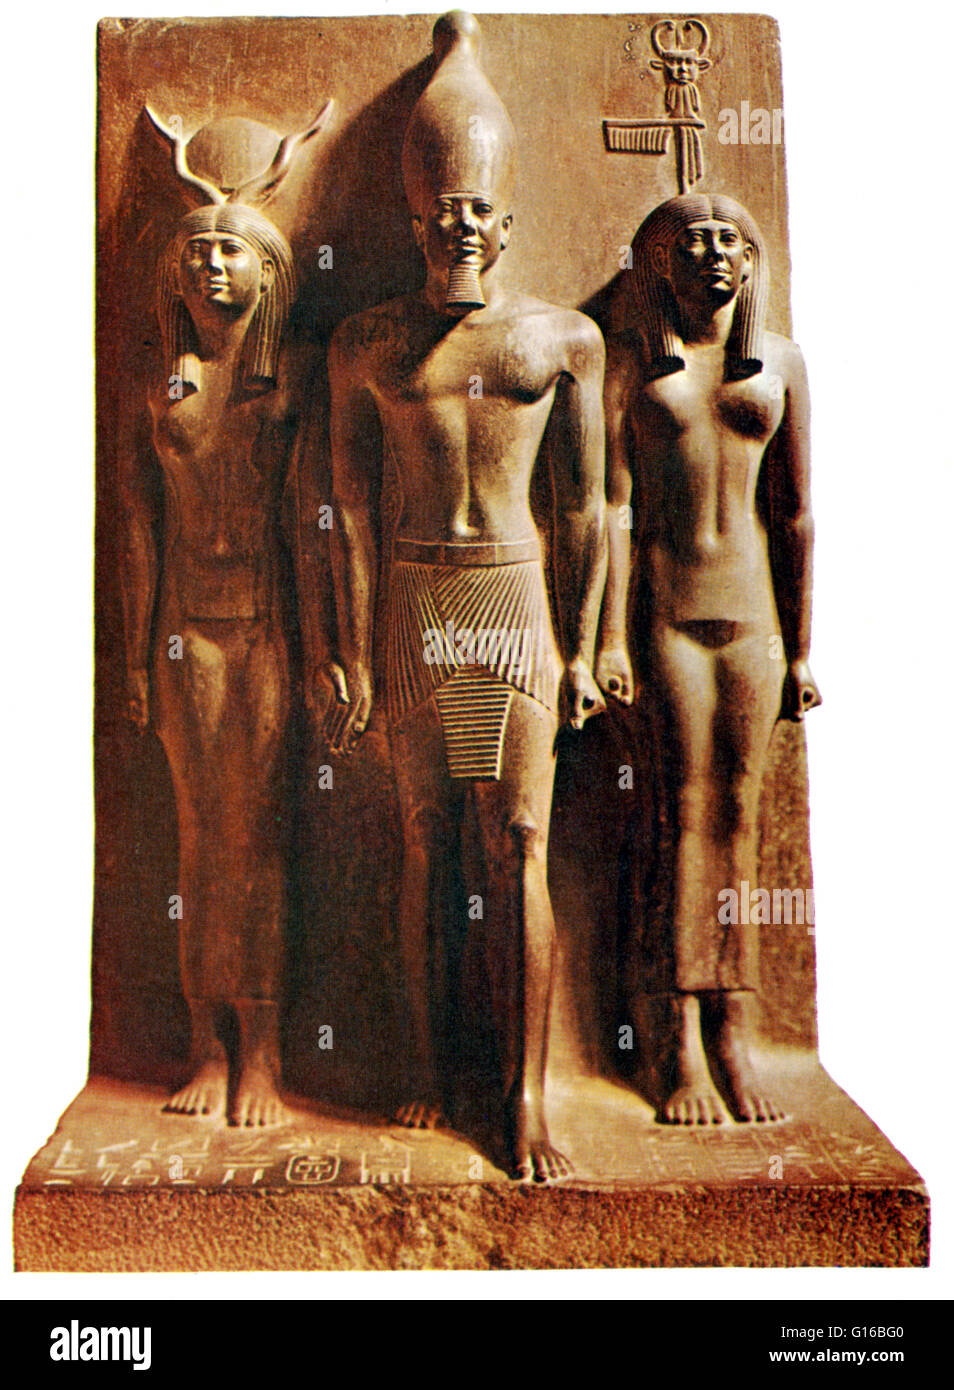 Pie de foto: La Tríada estatua del faraón Menkaura, acompañado por la diosa Hathor (a su derecha) y la personificación de la nome de Diospolis Parva (a su izquierda).' Menkaure fue un antiguo rey egipcio (Faraón de la IV dinastía durante el Viejo Reino. Foto de stock